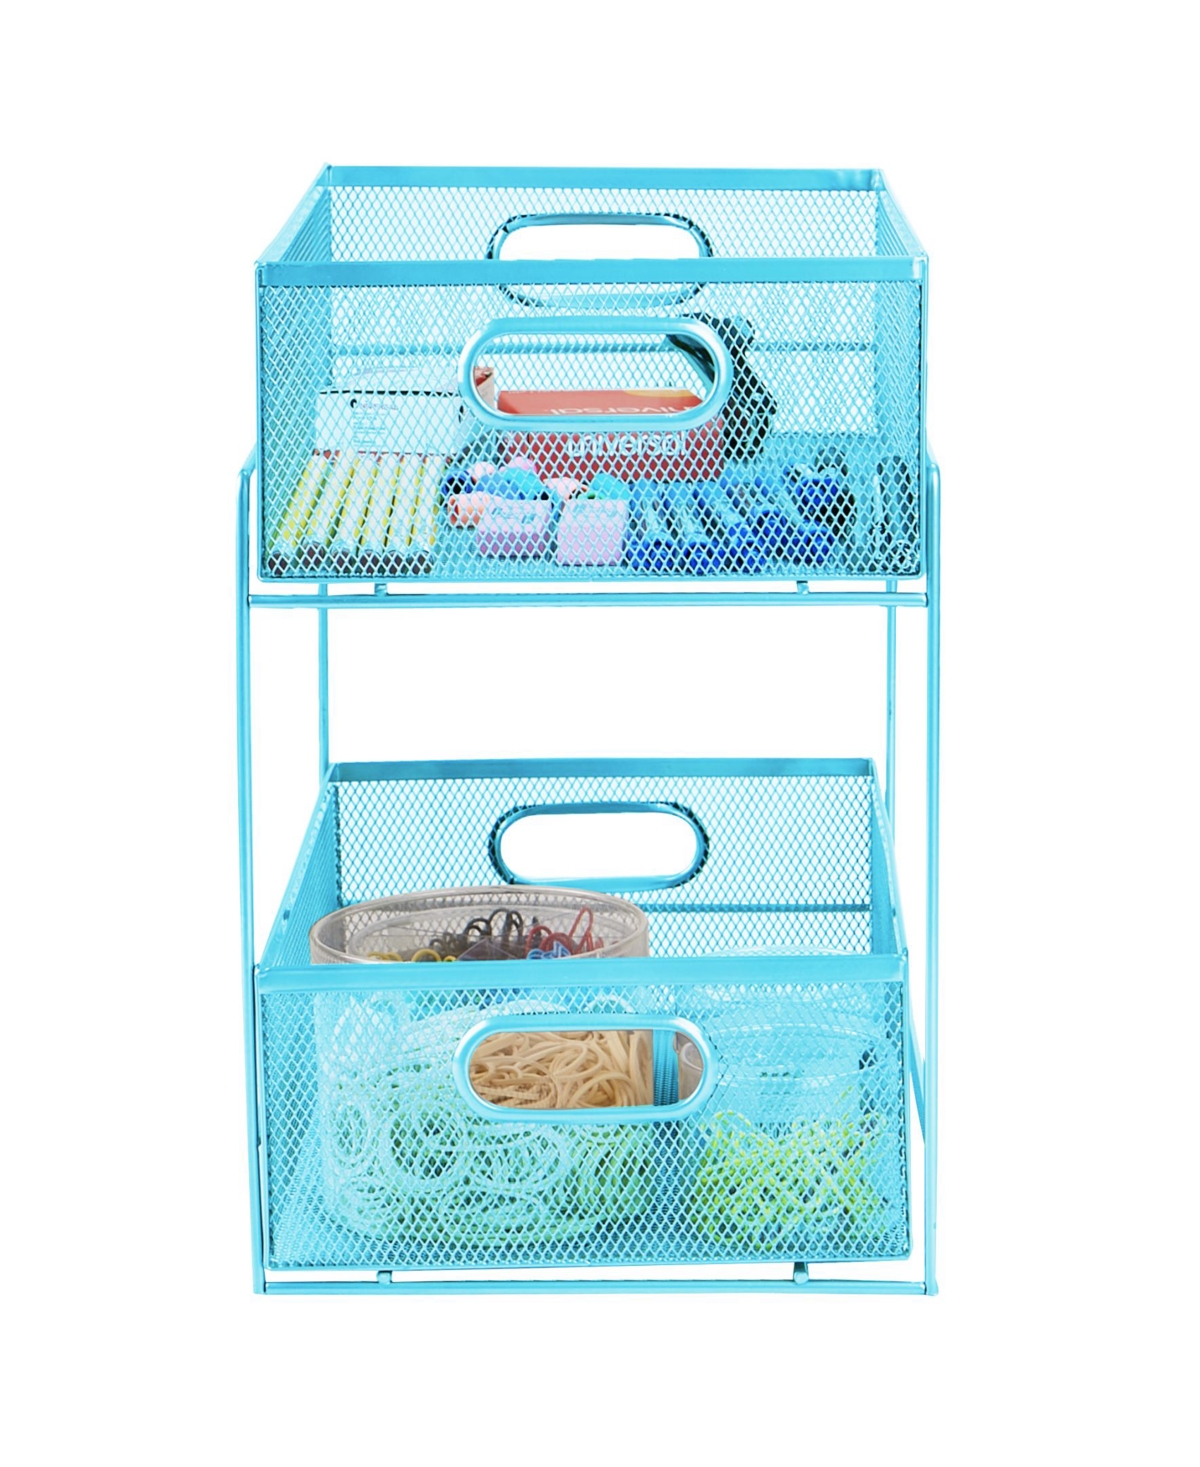 2 Tier Storage Basket Organizer - Blue